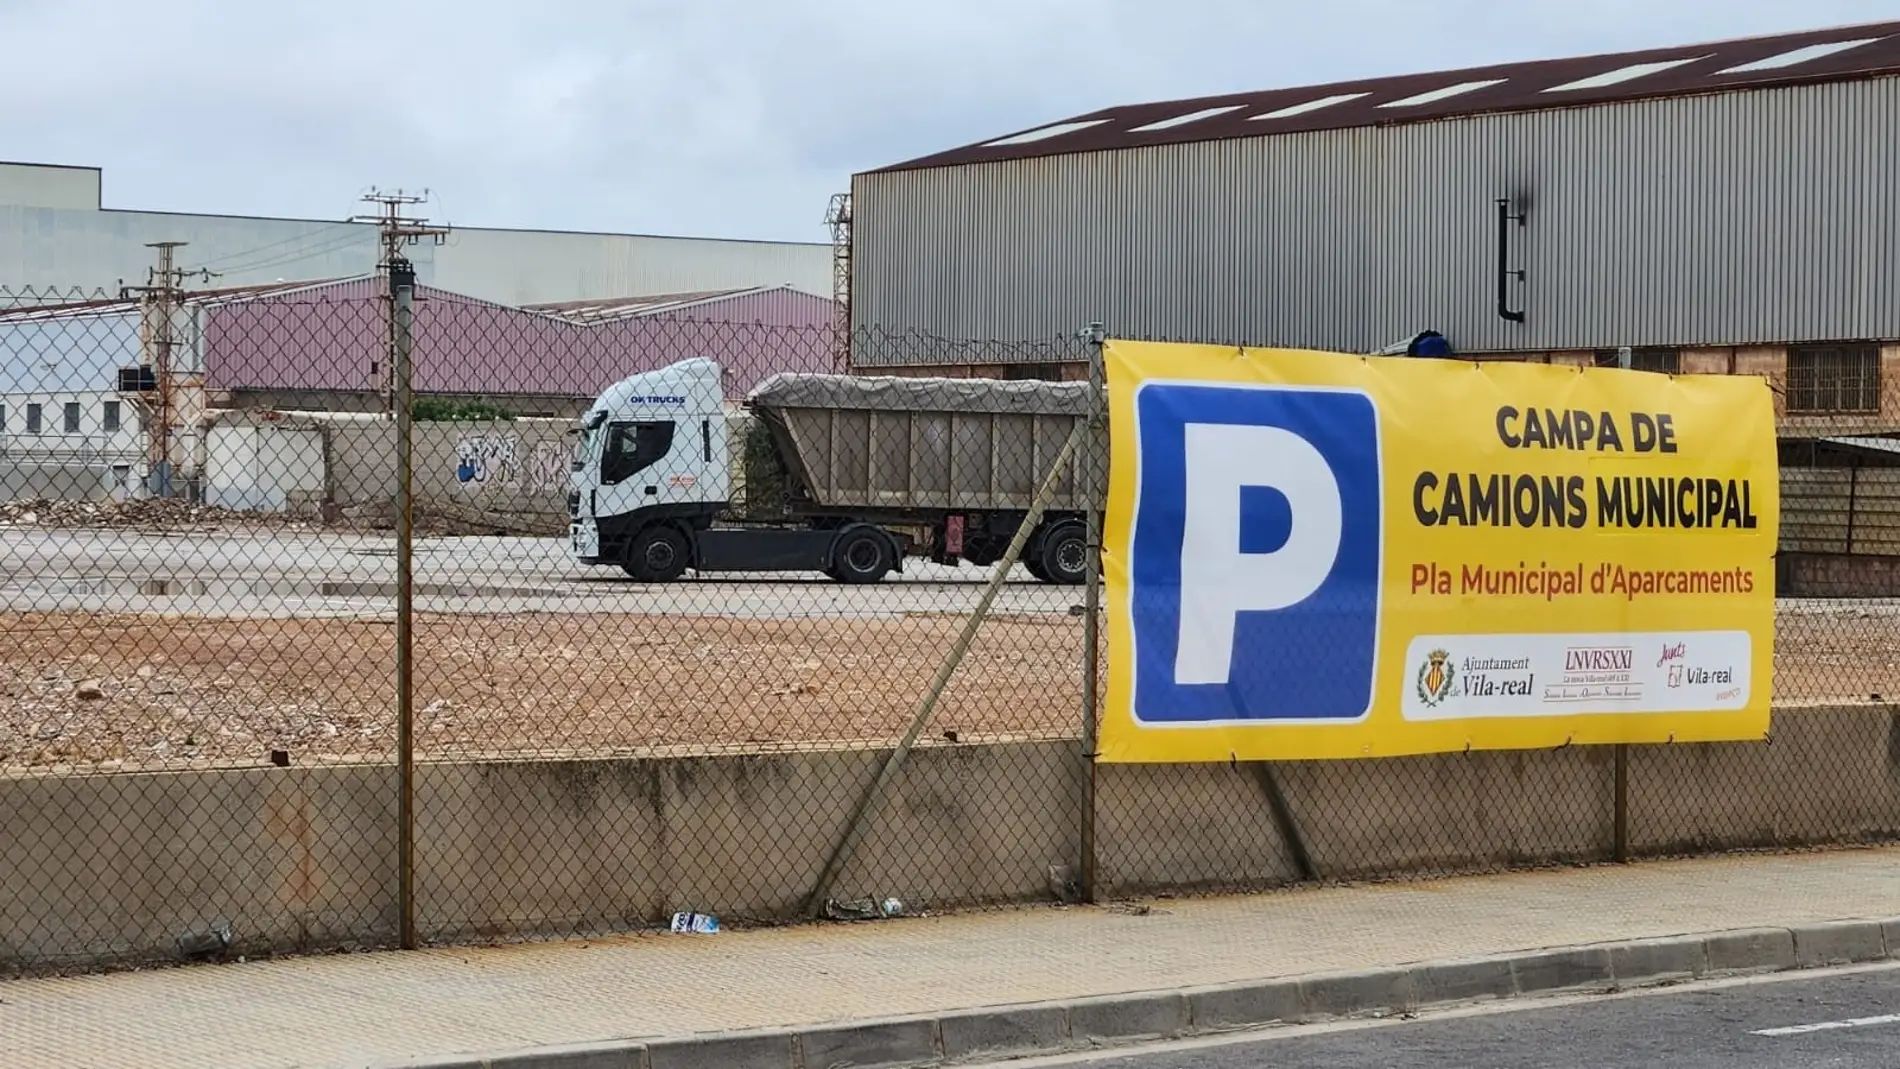 Vila-real habilita una campa provisional para dar respuesta a la falta de aparcamiento para camiones